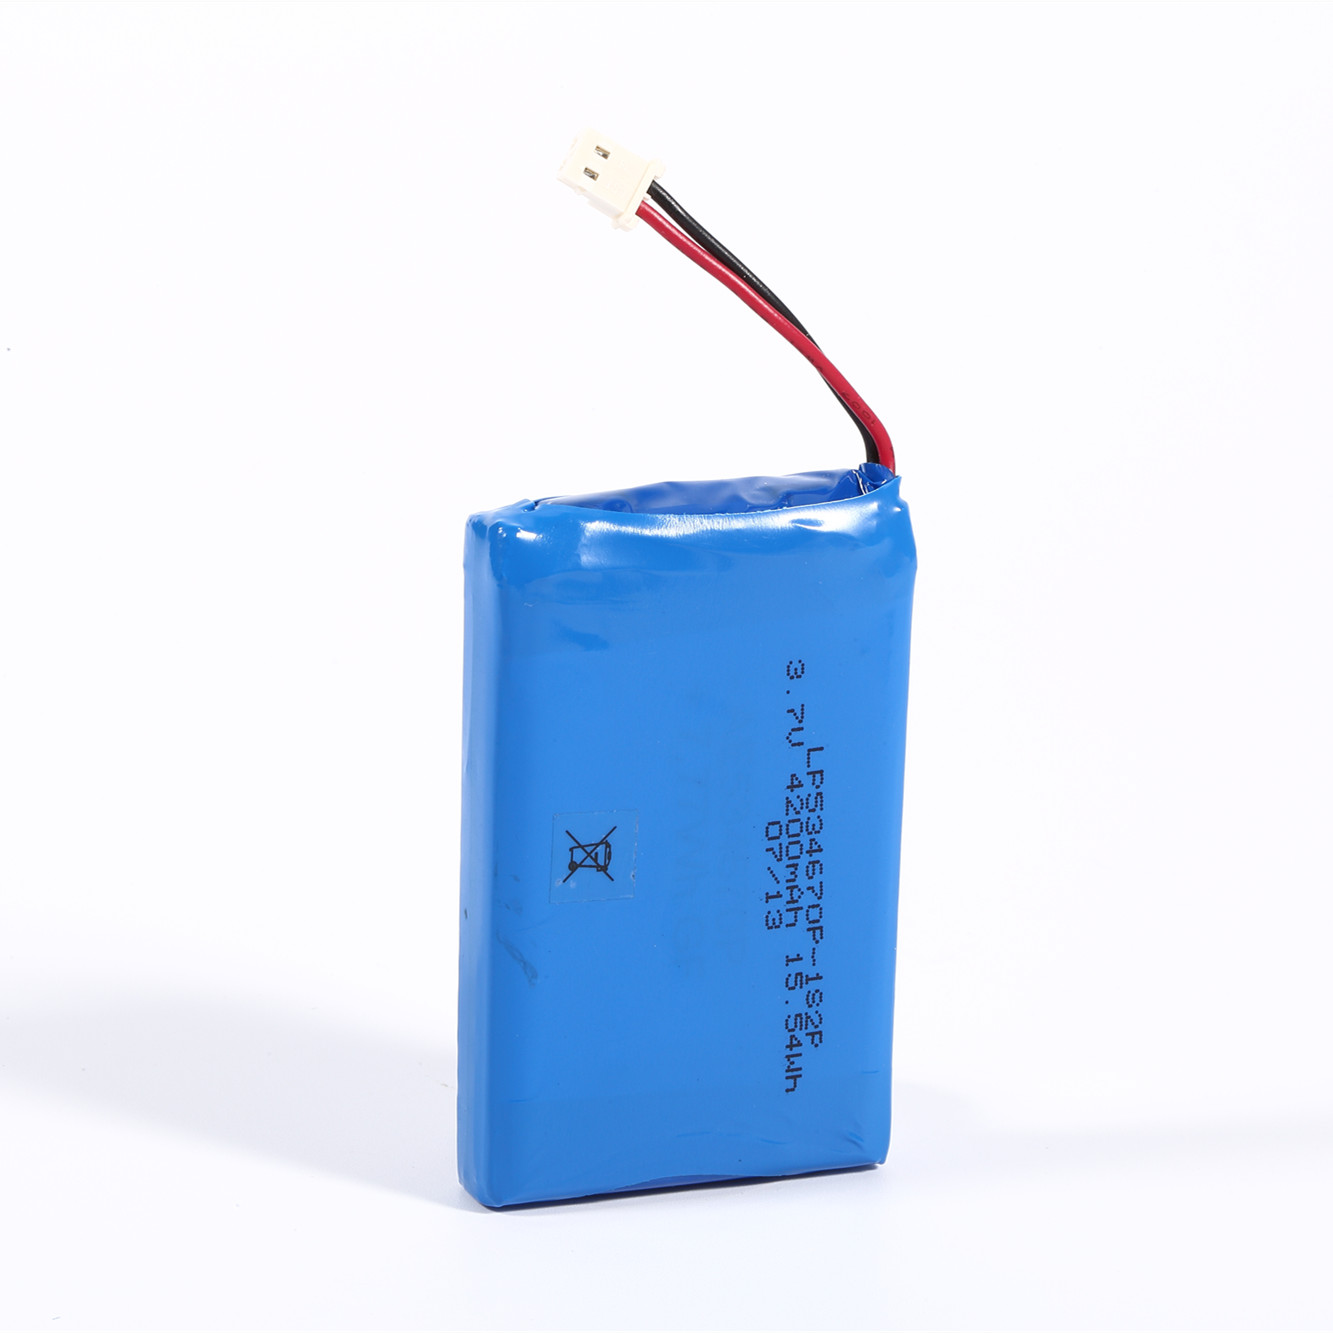 Lithium-Polymer-Batteriezelle für Drohnen mit hoher Kapazität von 3080 mAh